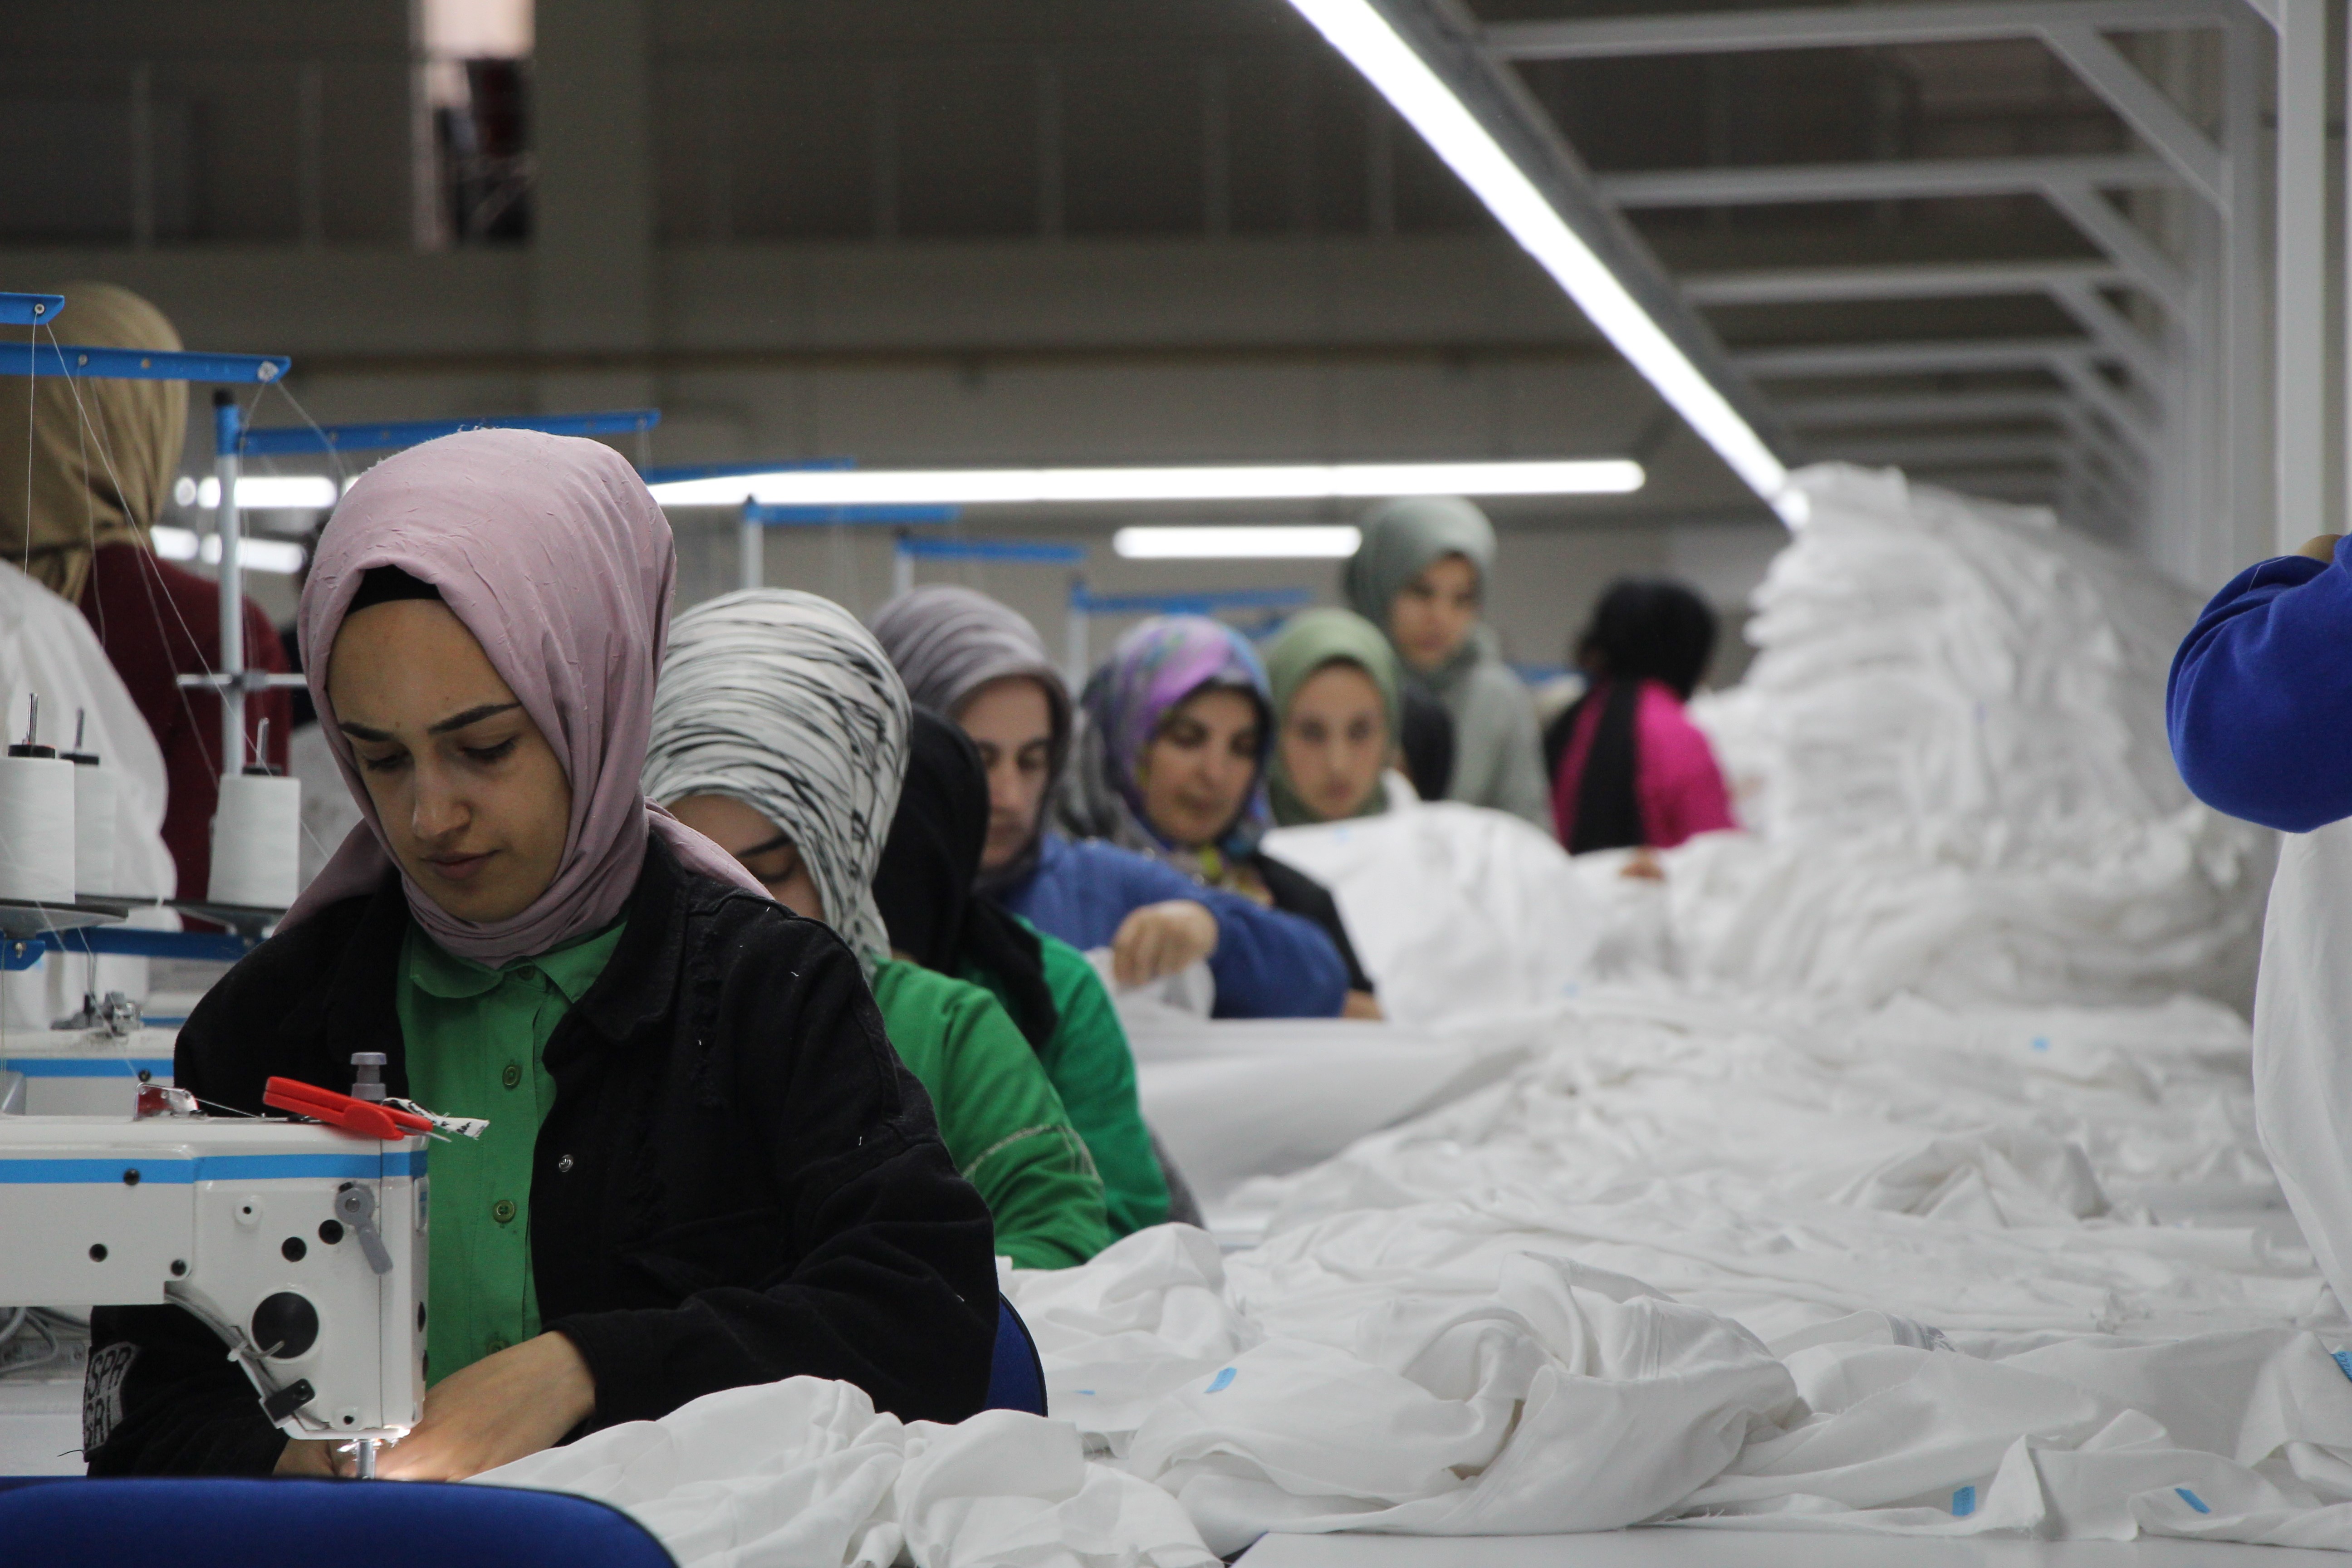 Bingöl’deki 6 tekstil fabrikanda 400 kişi çalışacak